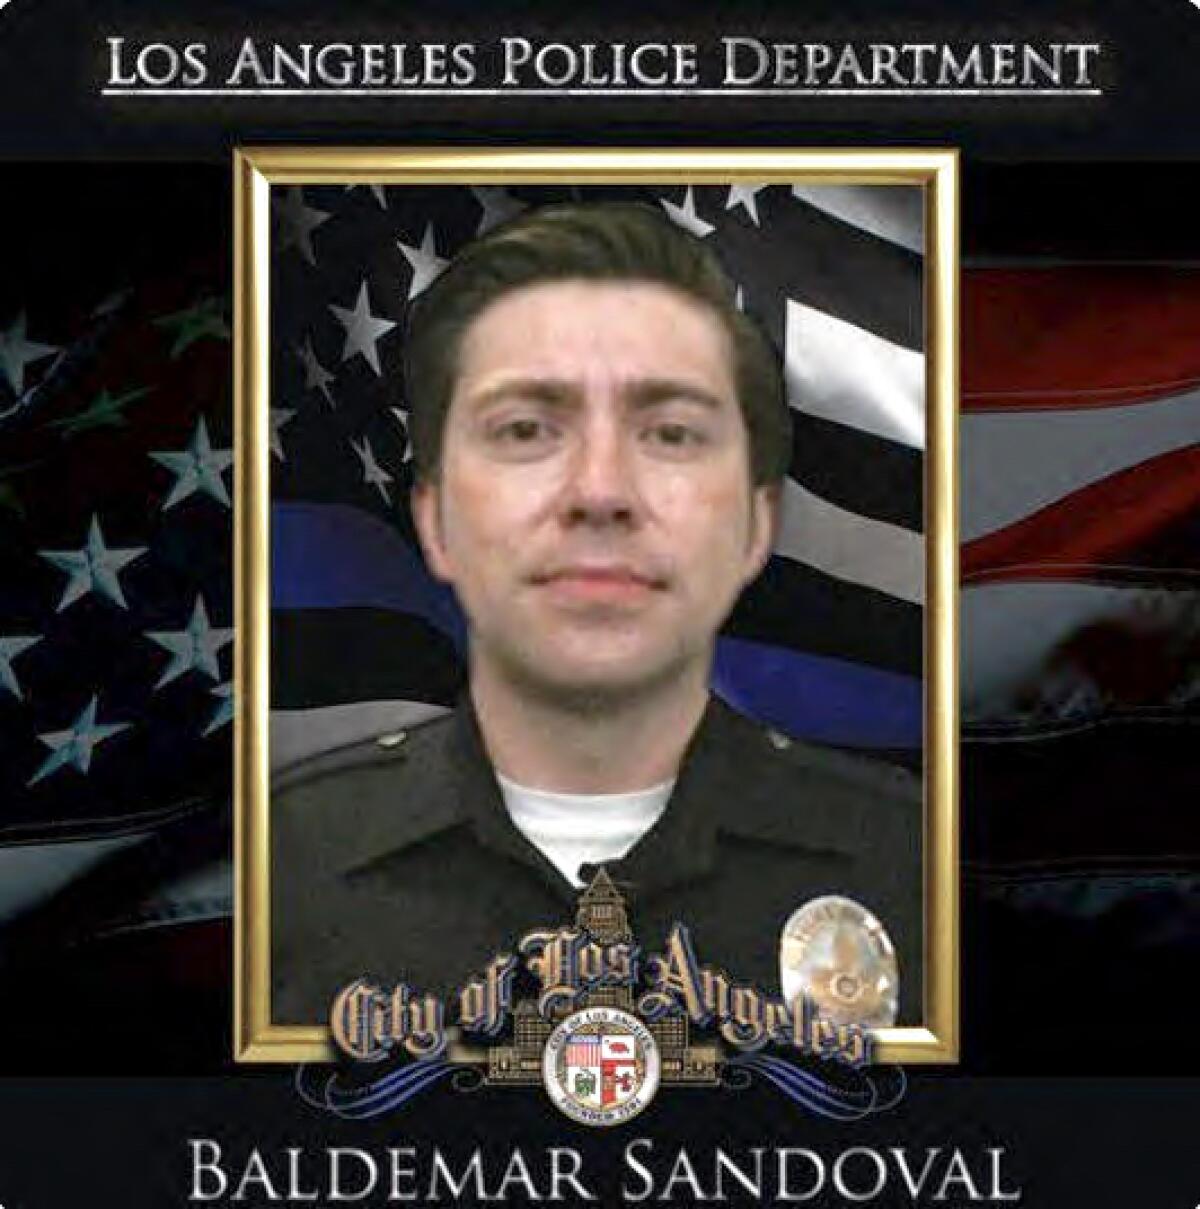 A portrait of LAPD Officer Baldemar Sandoval.